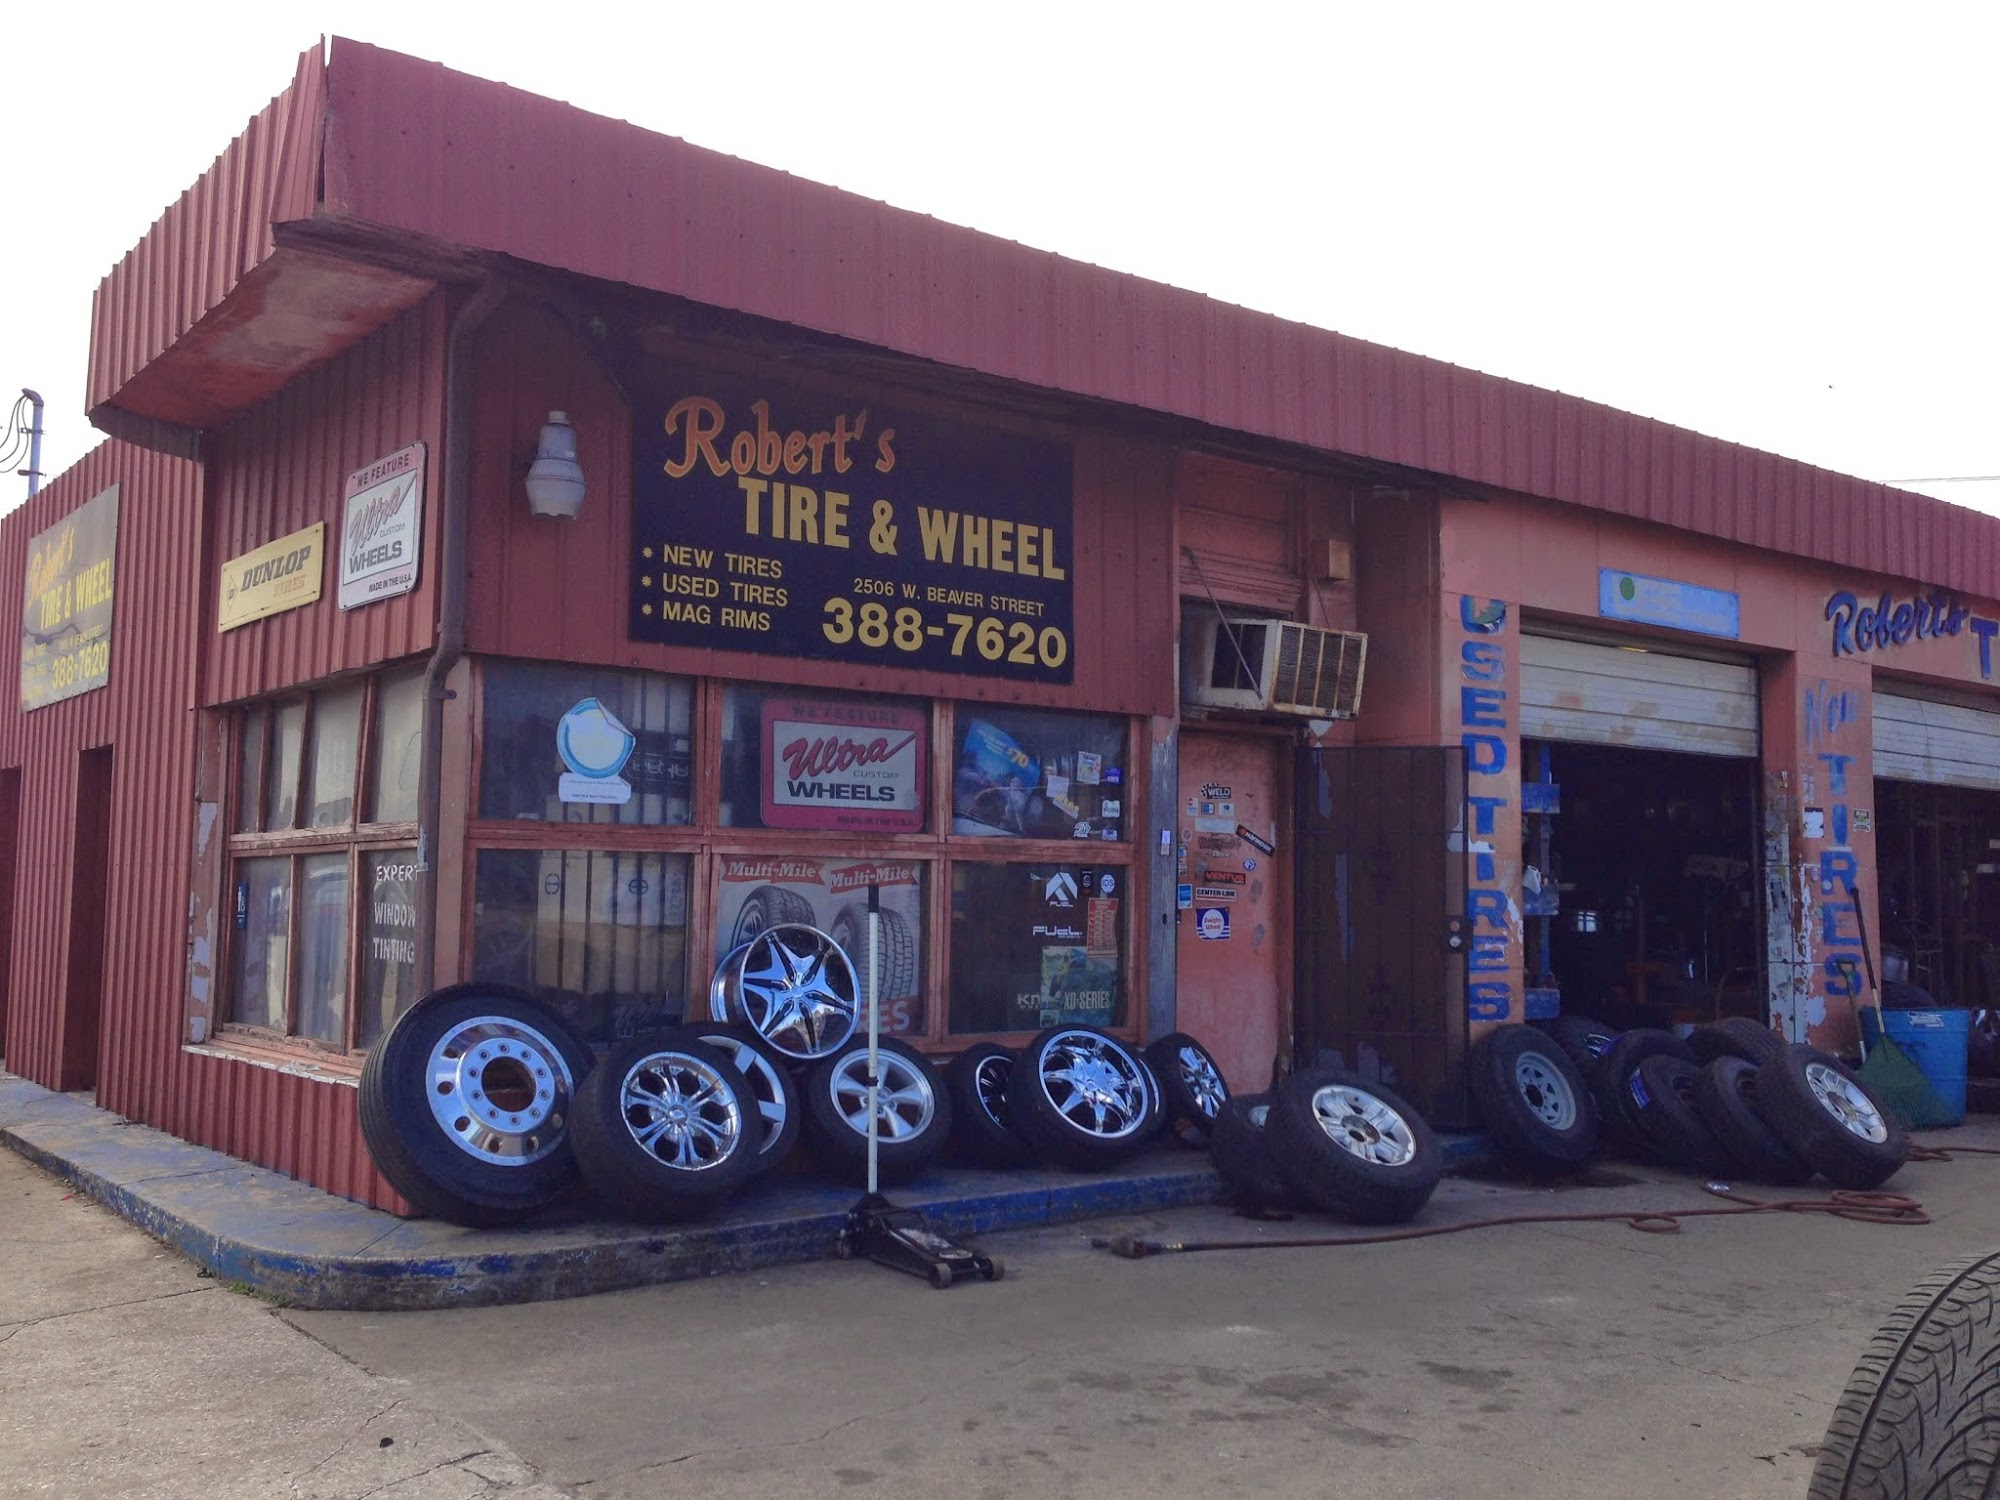 Robert's Tire & Wheel